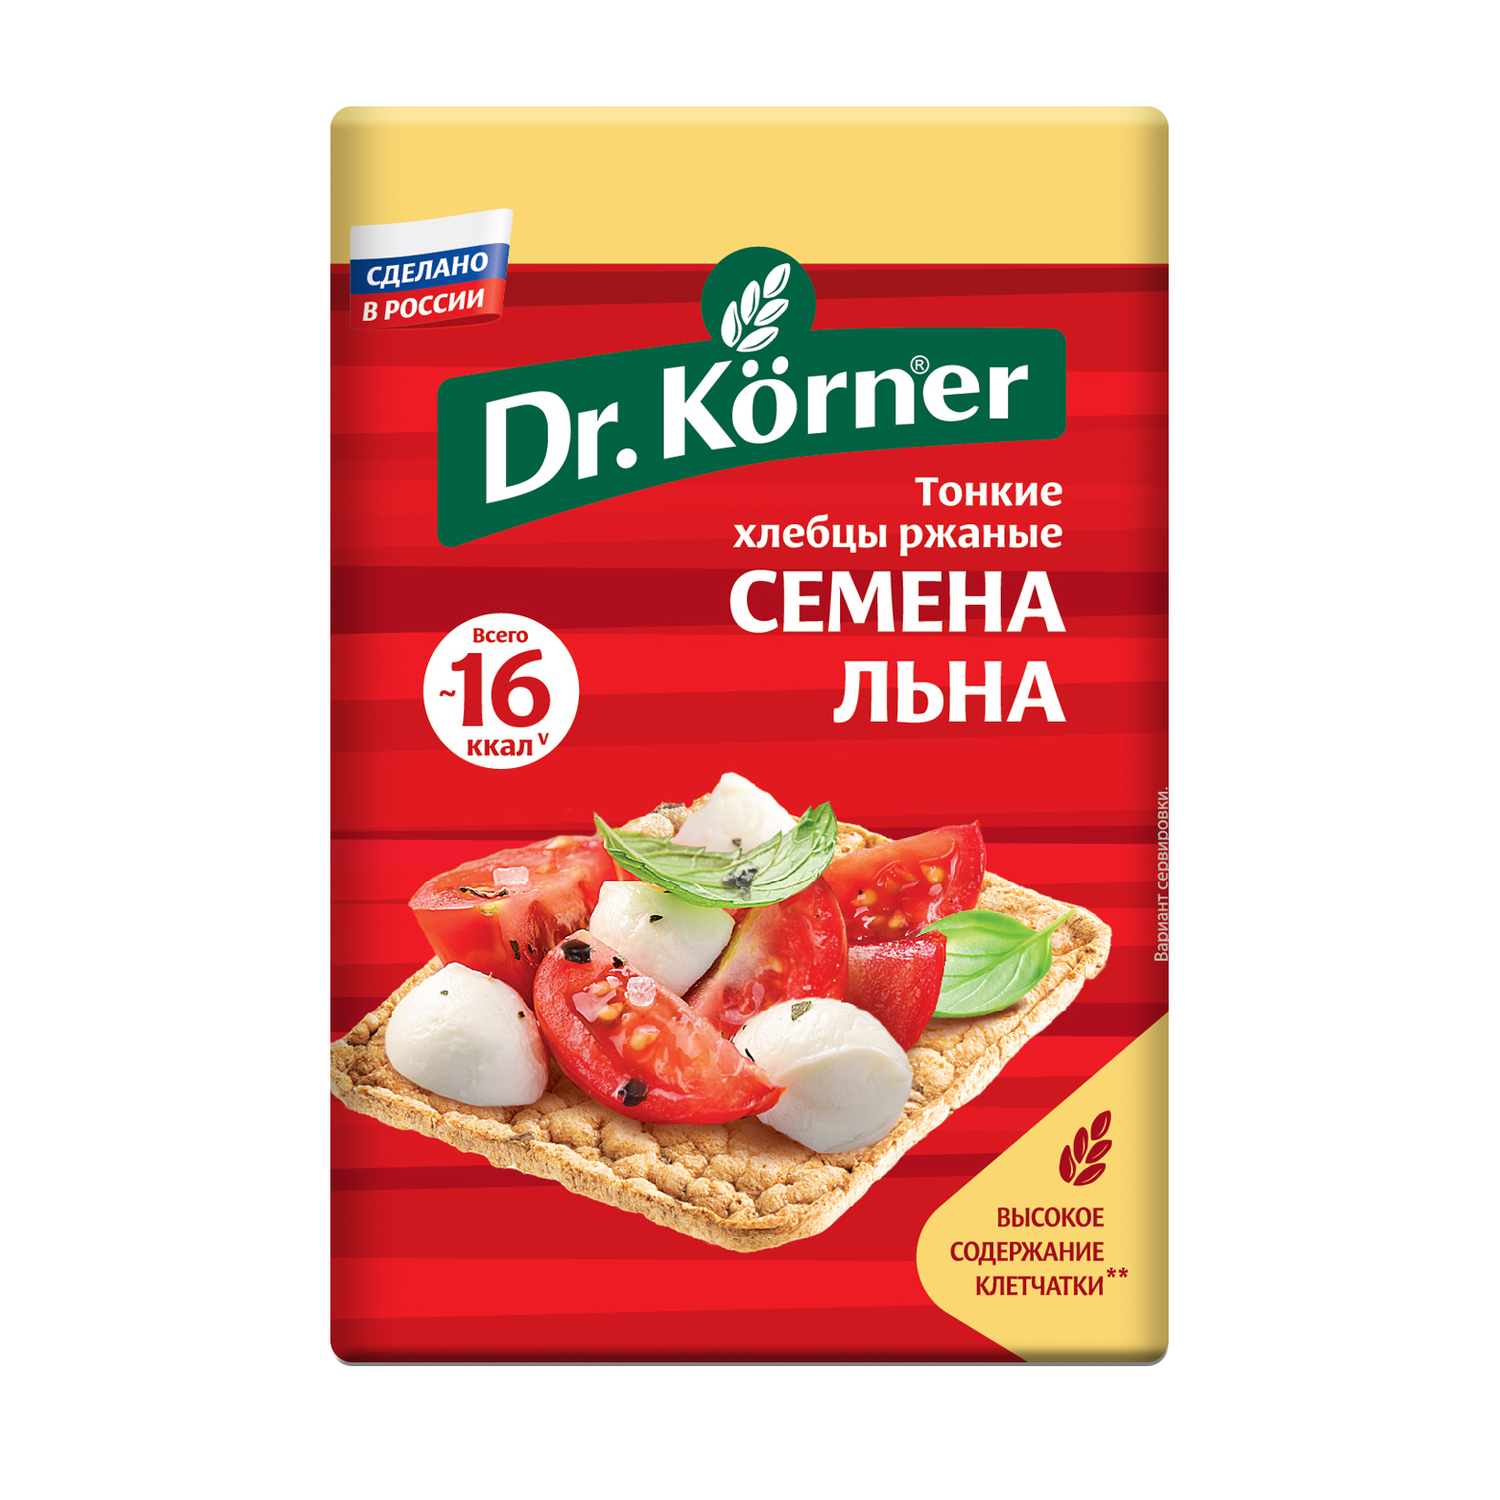 Хлебцы DrKorner Ржаные с семенами льна 10 шт по 100 гр - фото 2